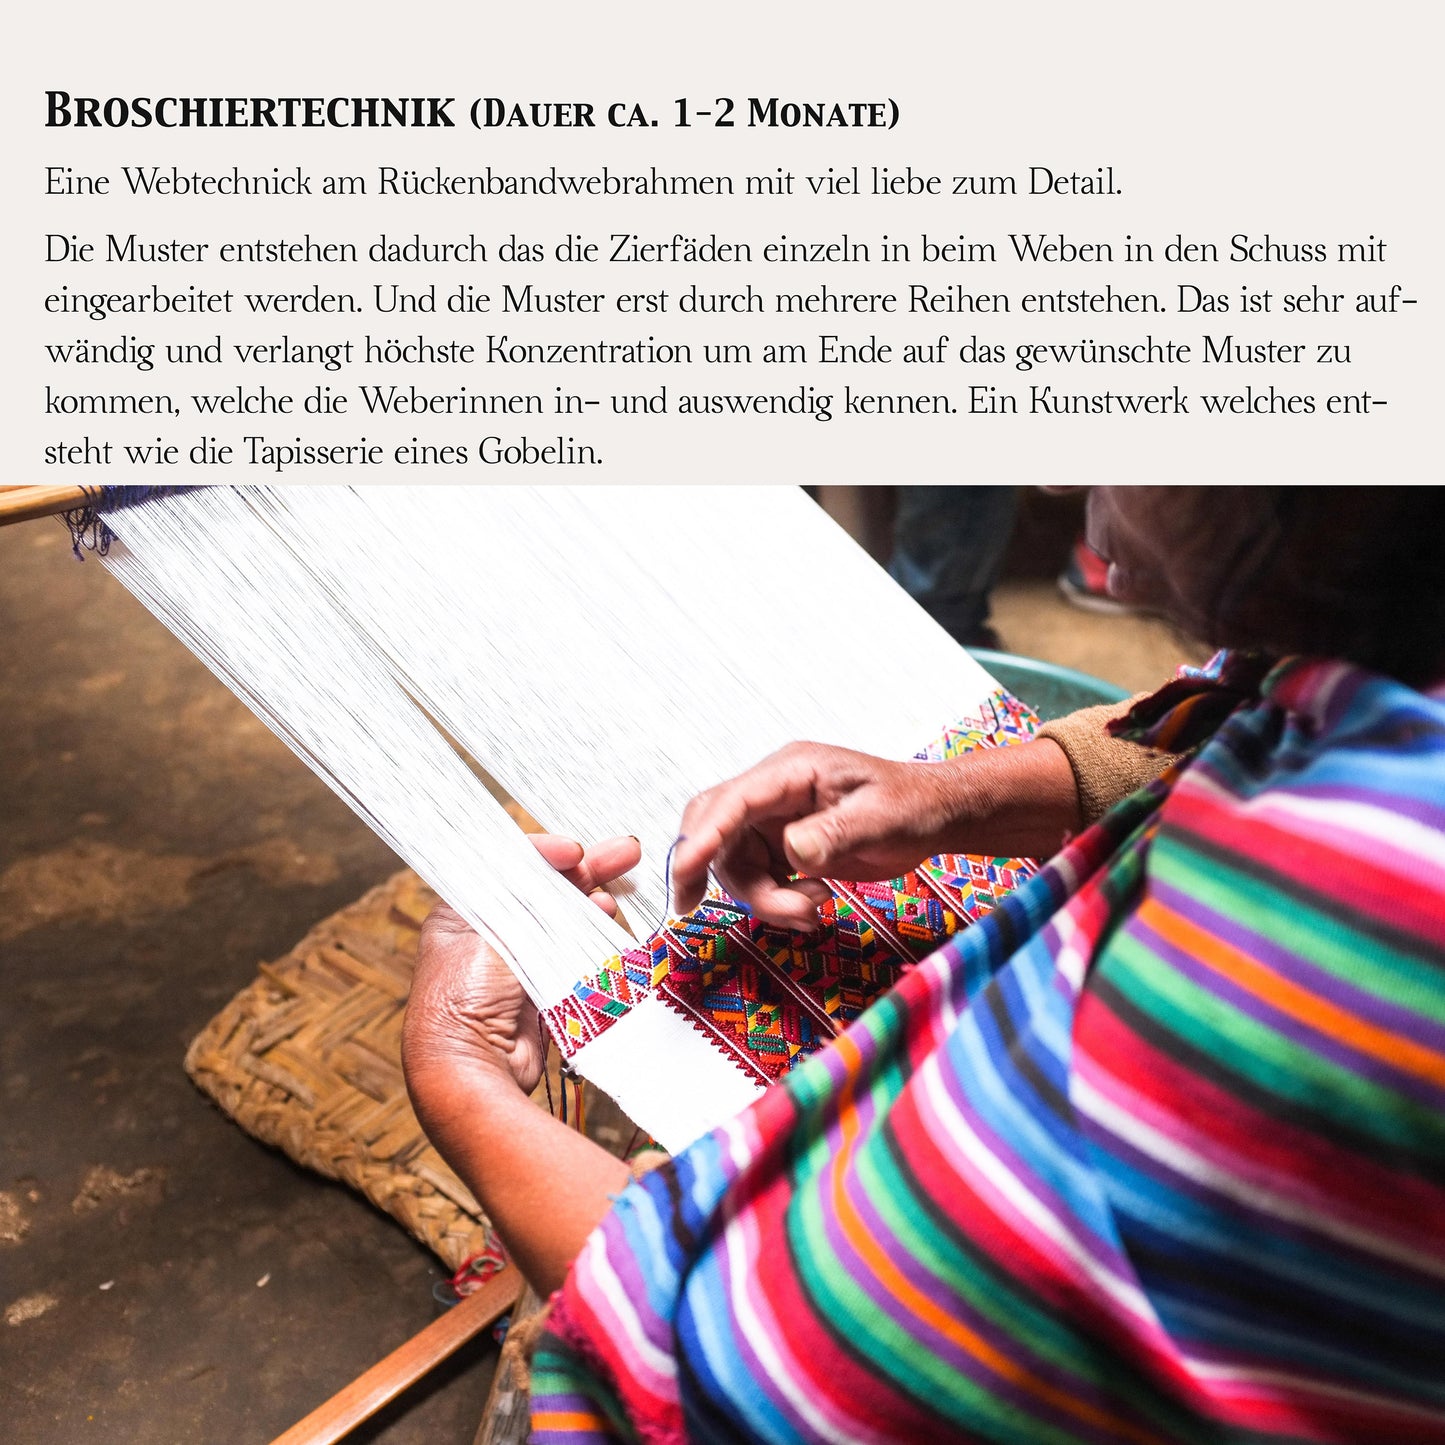 Seltener Stoff mit Stick, weiß/orange,100x120cm Unikat aus Guatemala, handgewebt von Mayas, Nähprojekte, wie Kissen, Westen, Taschen